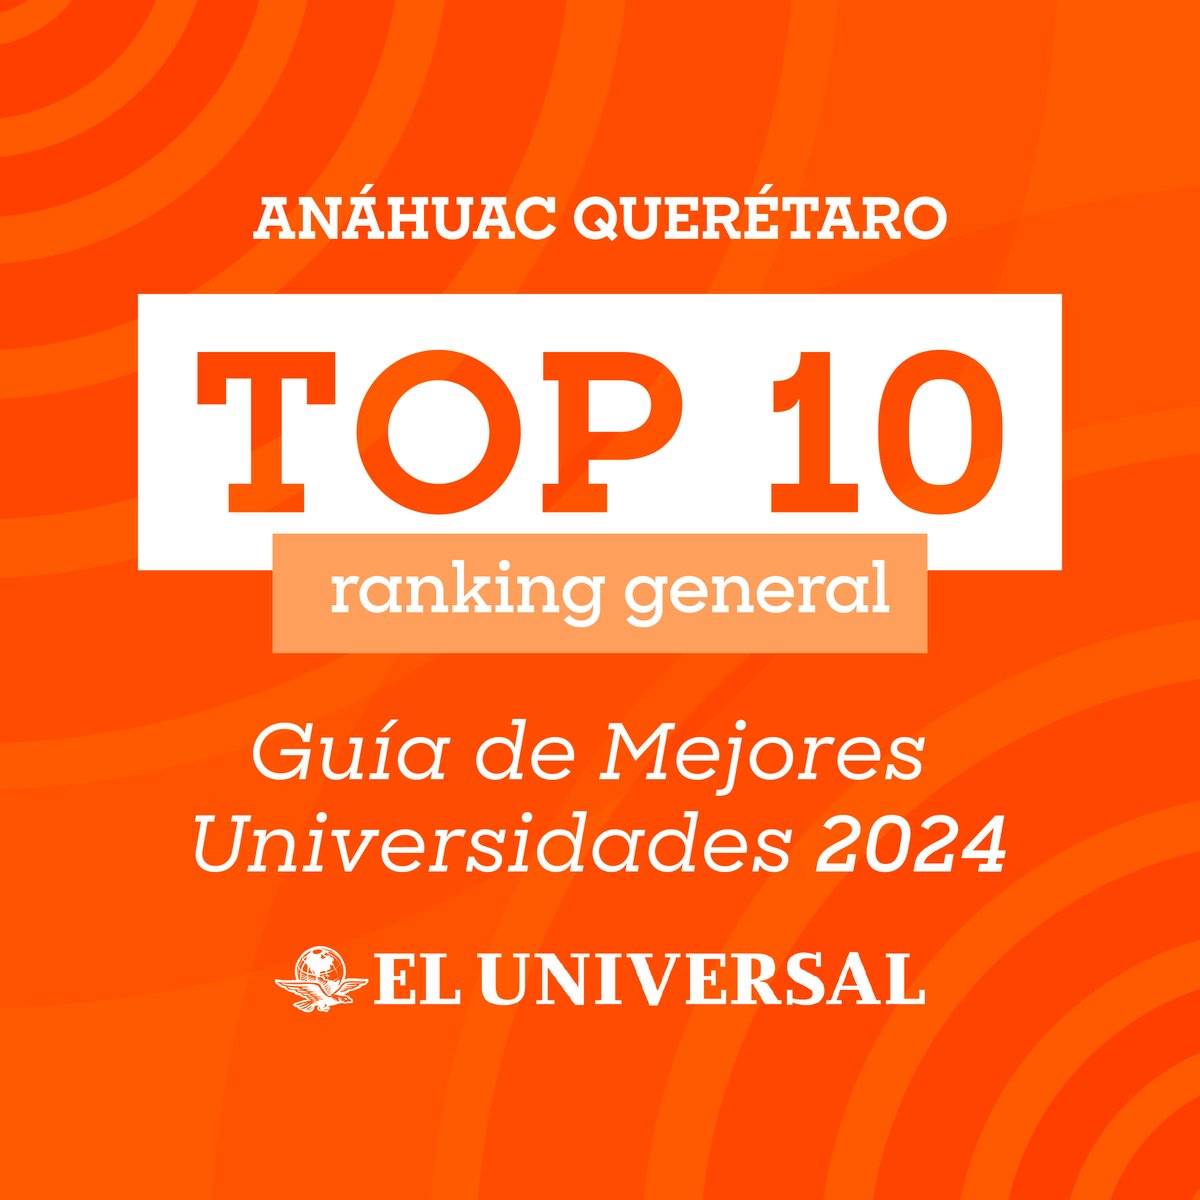 Nos encontramos en el top 10 del ranking general en la Guía de Mejores Universidades 2024 de @El_Universal_Mx, posicionándonos en los primeros puestos, siendo la institución más joven, gracias a nuestra formación de calidad 🦁🏅 #OrgulloAnáhuac linkedin.com/company/el-uni…